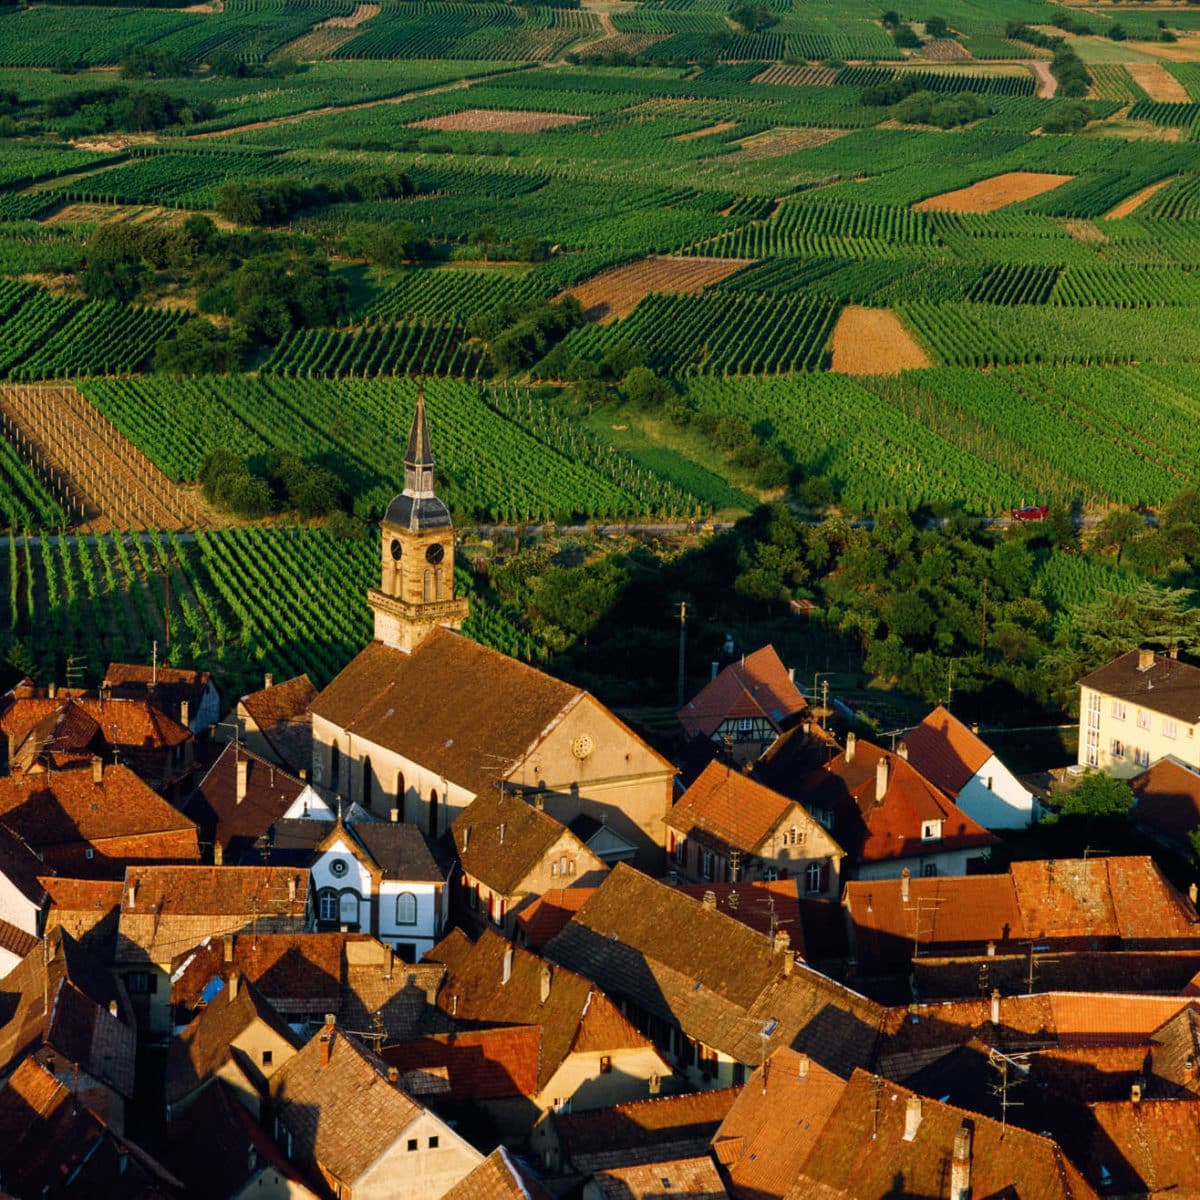 Village viticole de Heiligenstein, Bas-Rhin, France (48°25’ N - 7°27’ E).